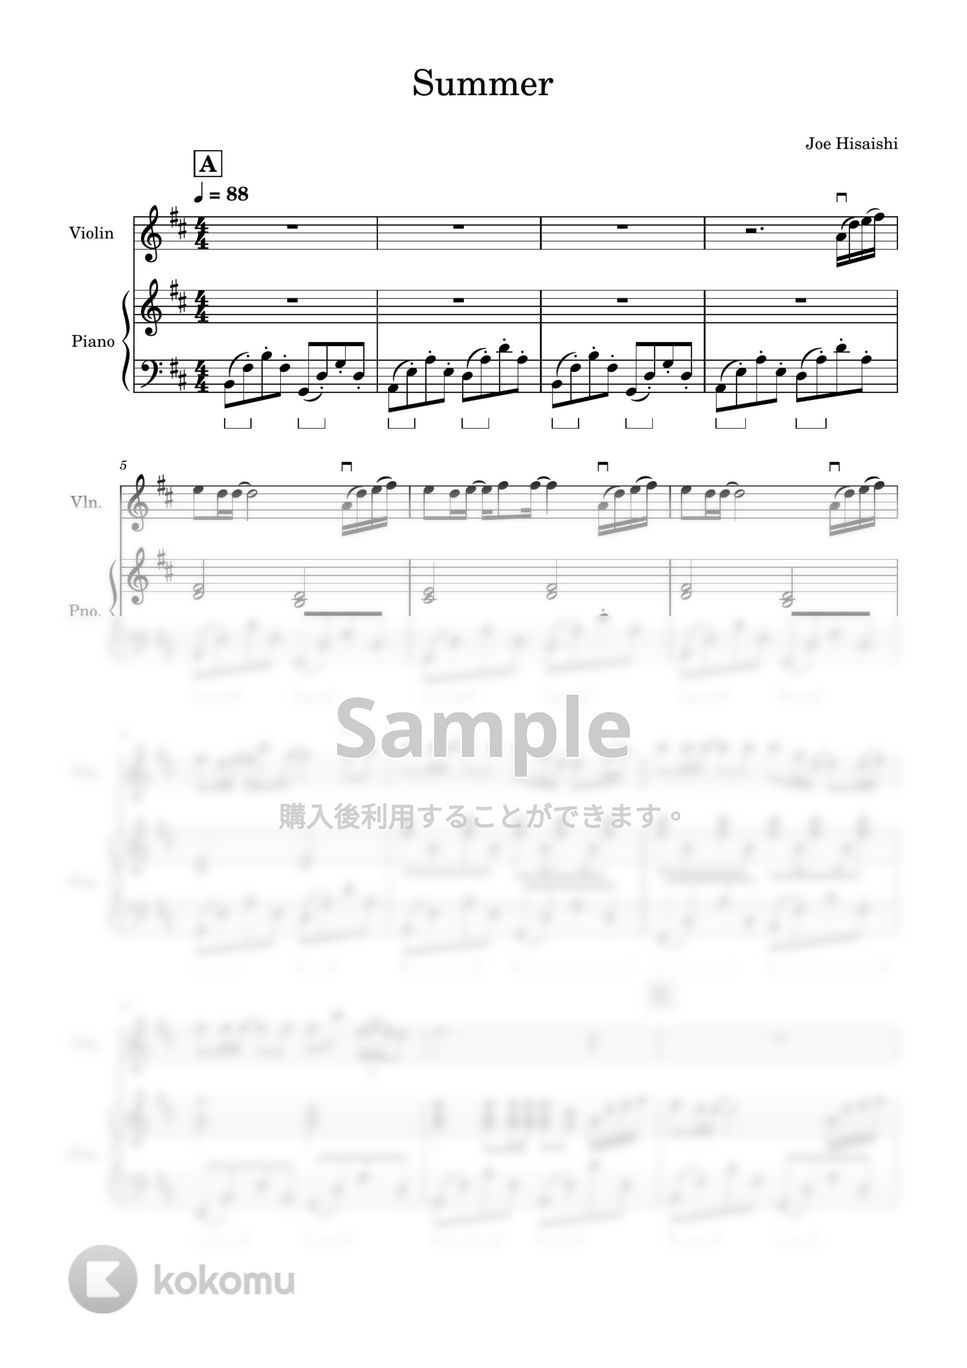 久石譲 - Summer (バイオリン&ピアノ) by Kaide